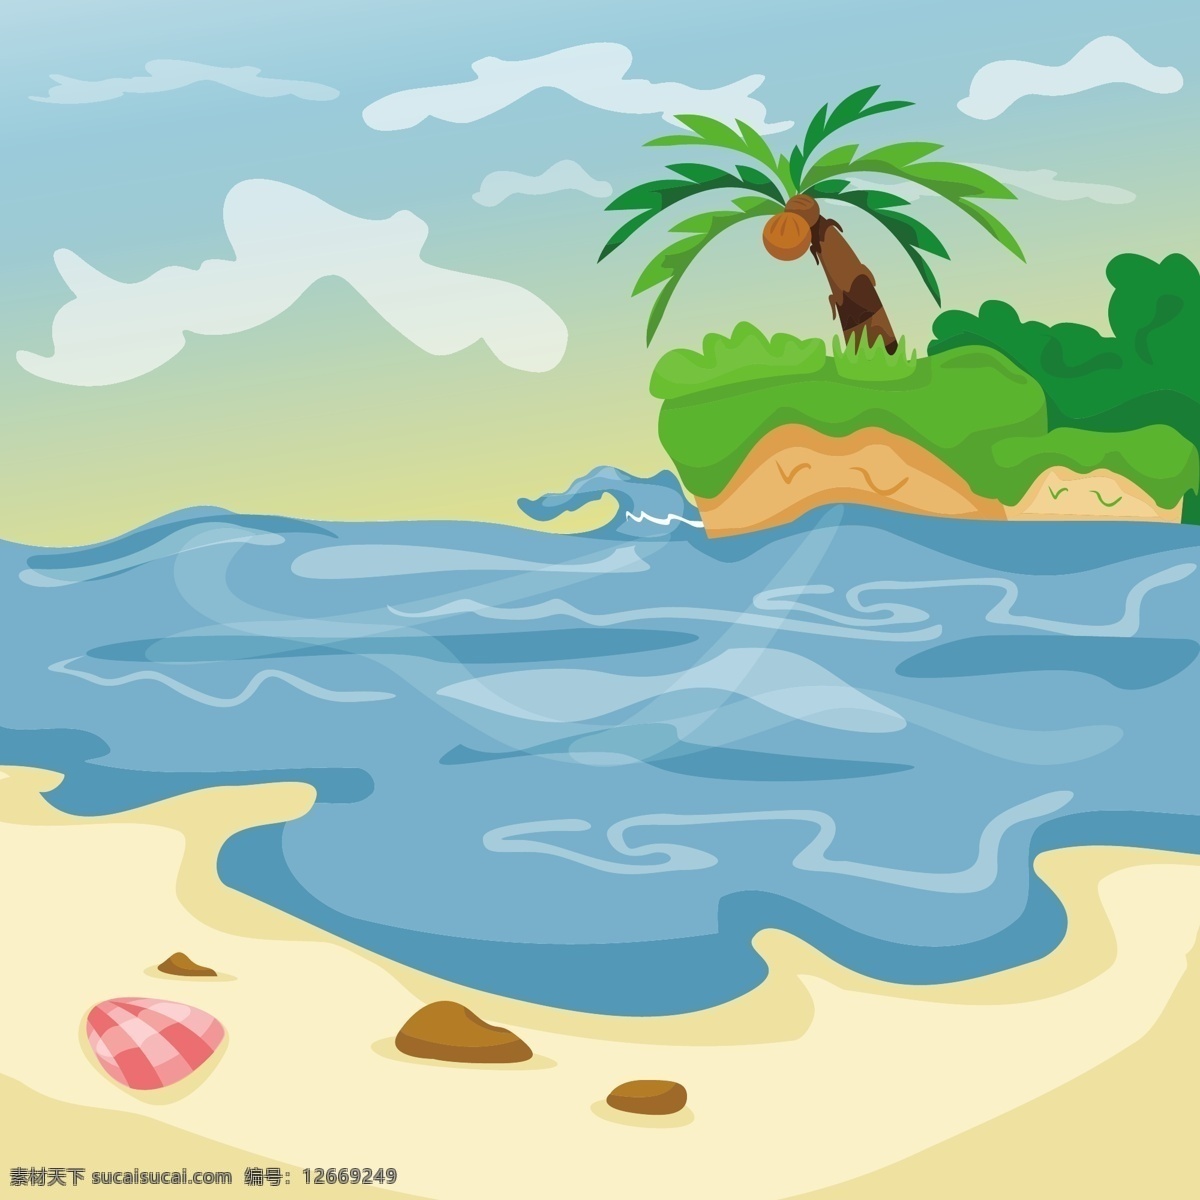 海滩 海边 沙滩 热带海滩 旅游 椰树 插画 蓝天 白云 度假 手绘 热带 大海 海洋 自然风景 自然景观 自然风光